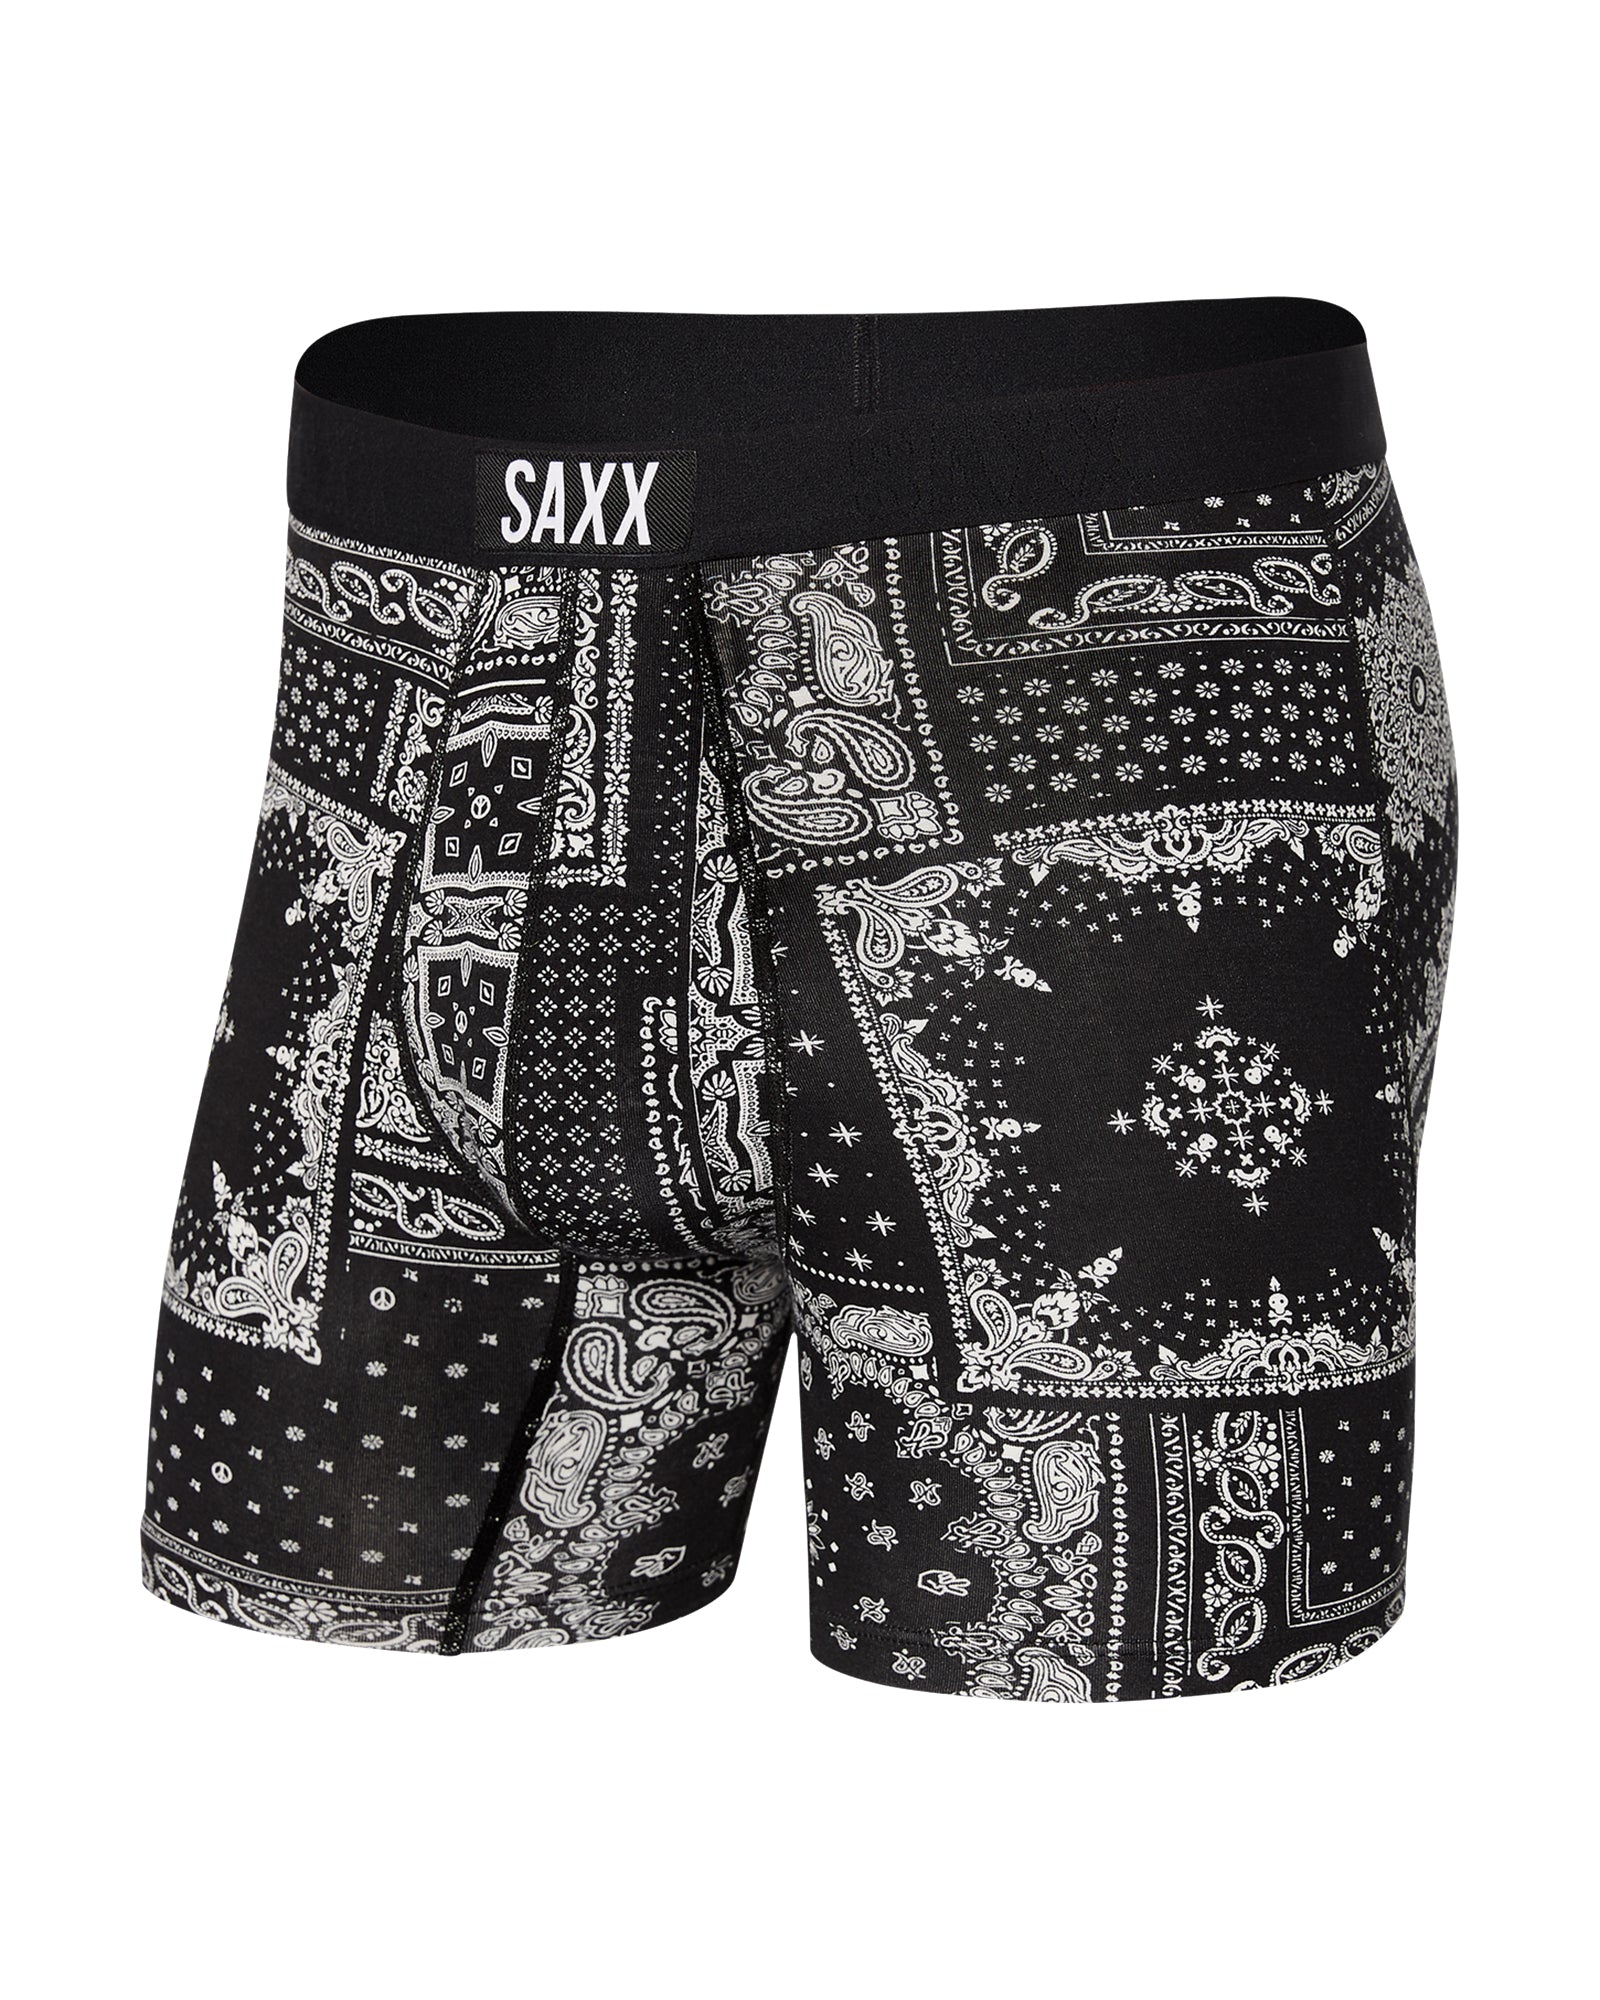 Vibe Super Soft Boxer Brief - SAXX